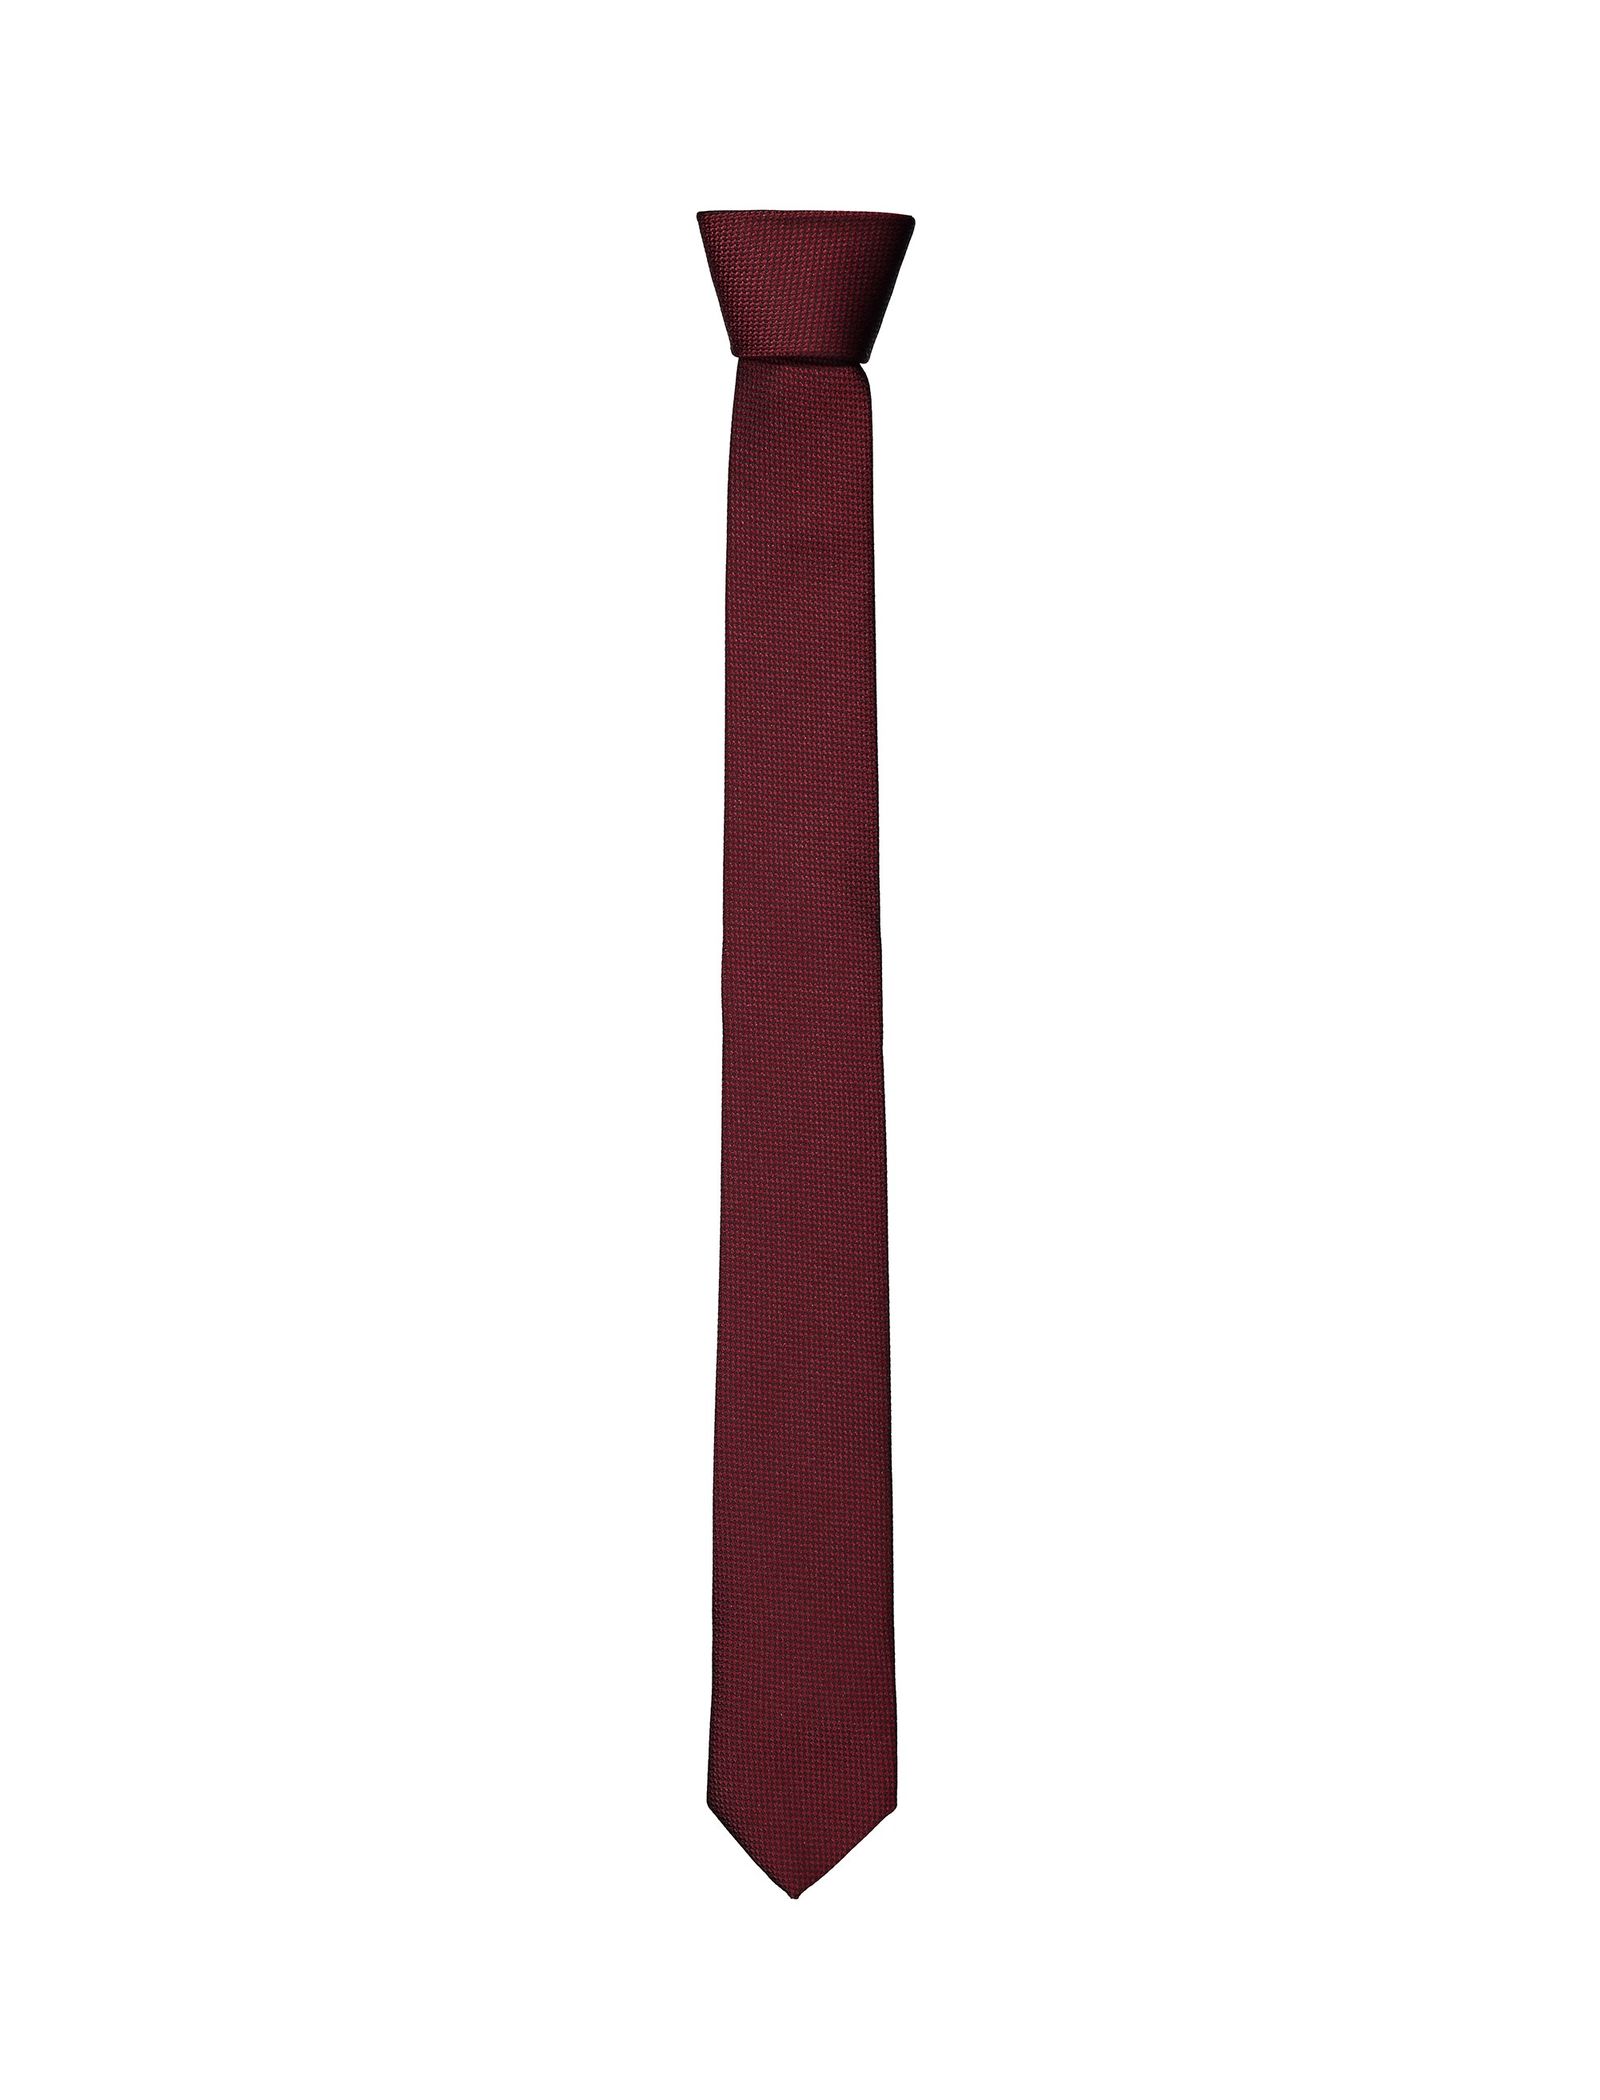 کراوات طرح دار مردانه - دفکتو - زرشکي - 5